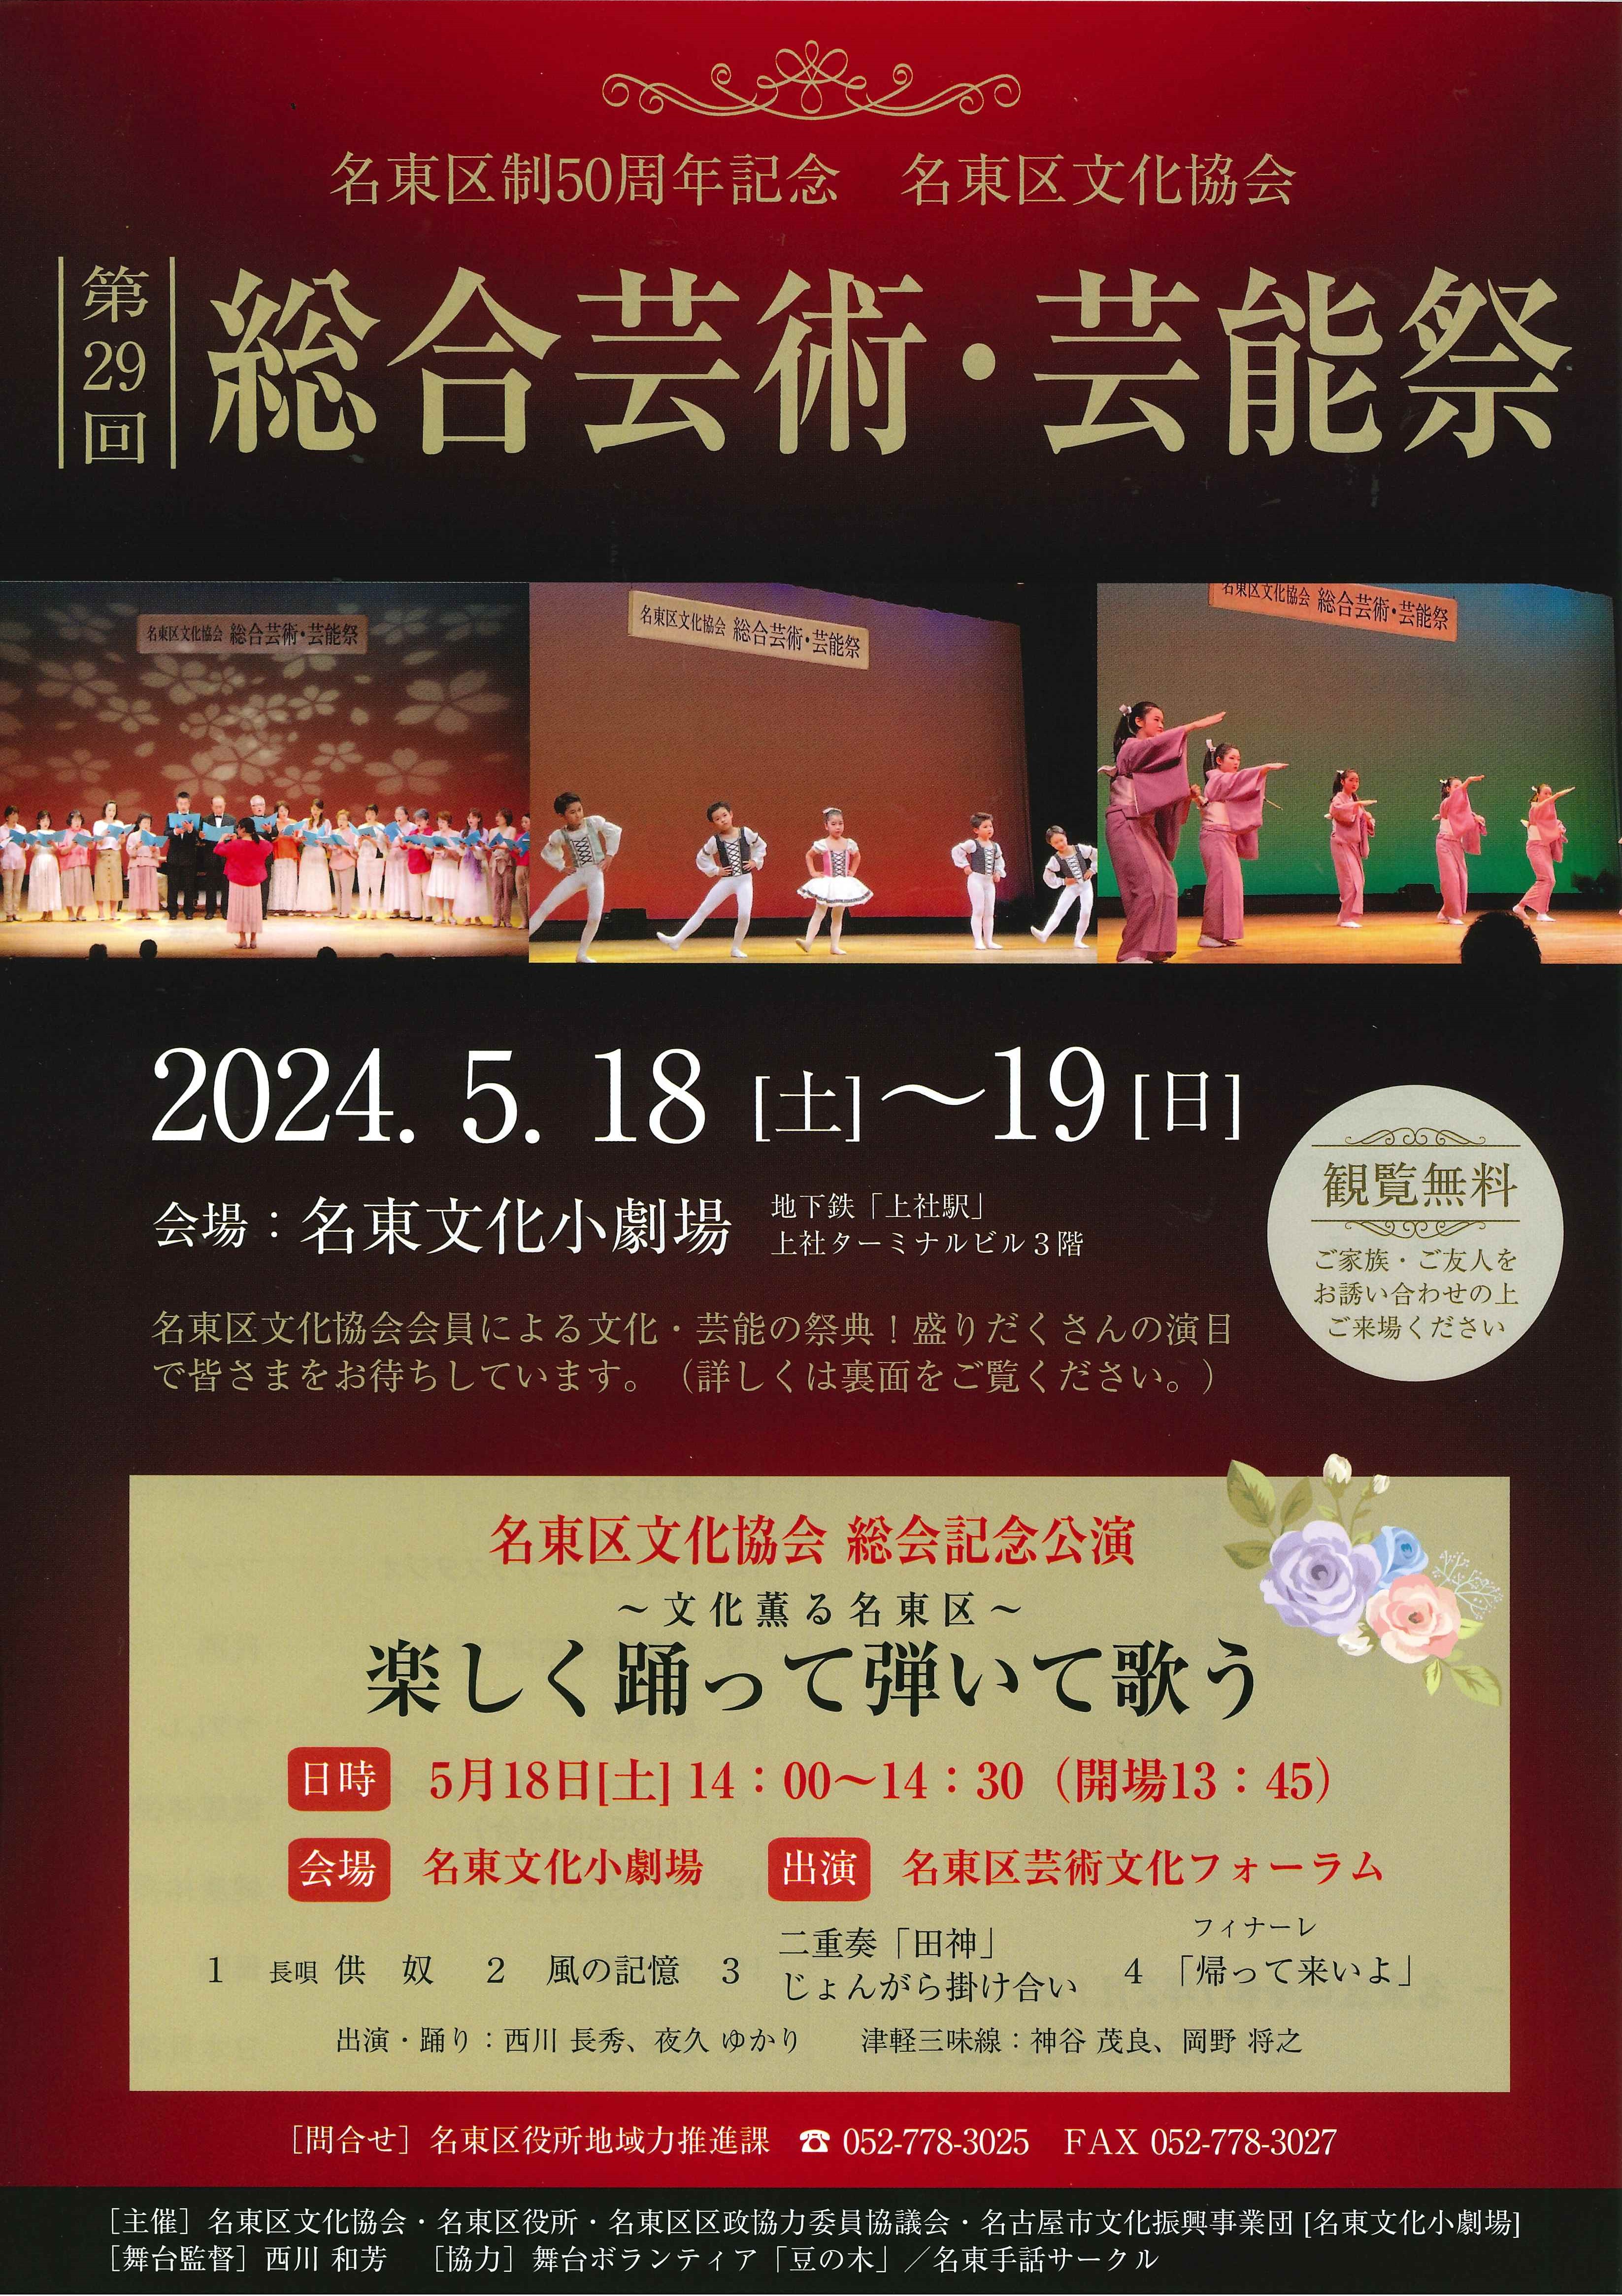 第29回名東区文化協会 総合芸術・芸能祭 のチラシ